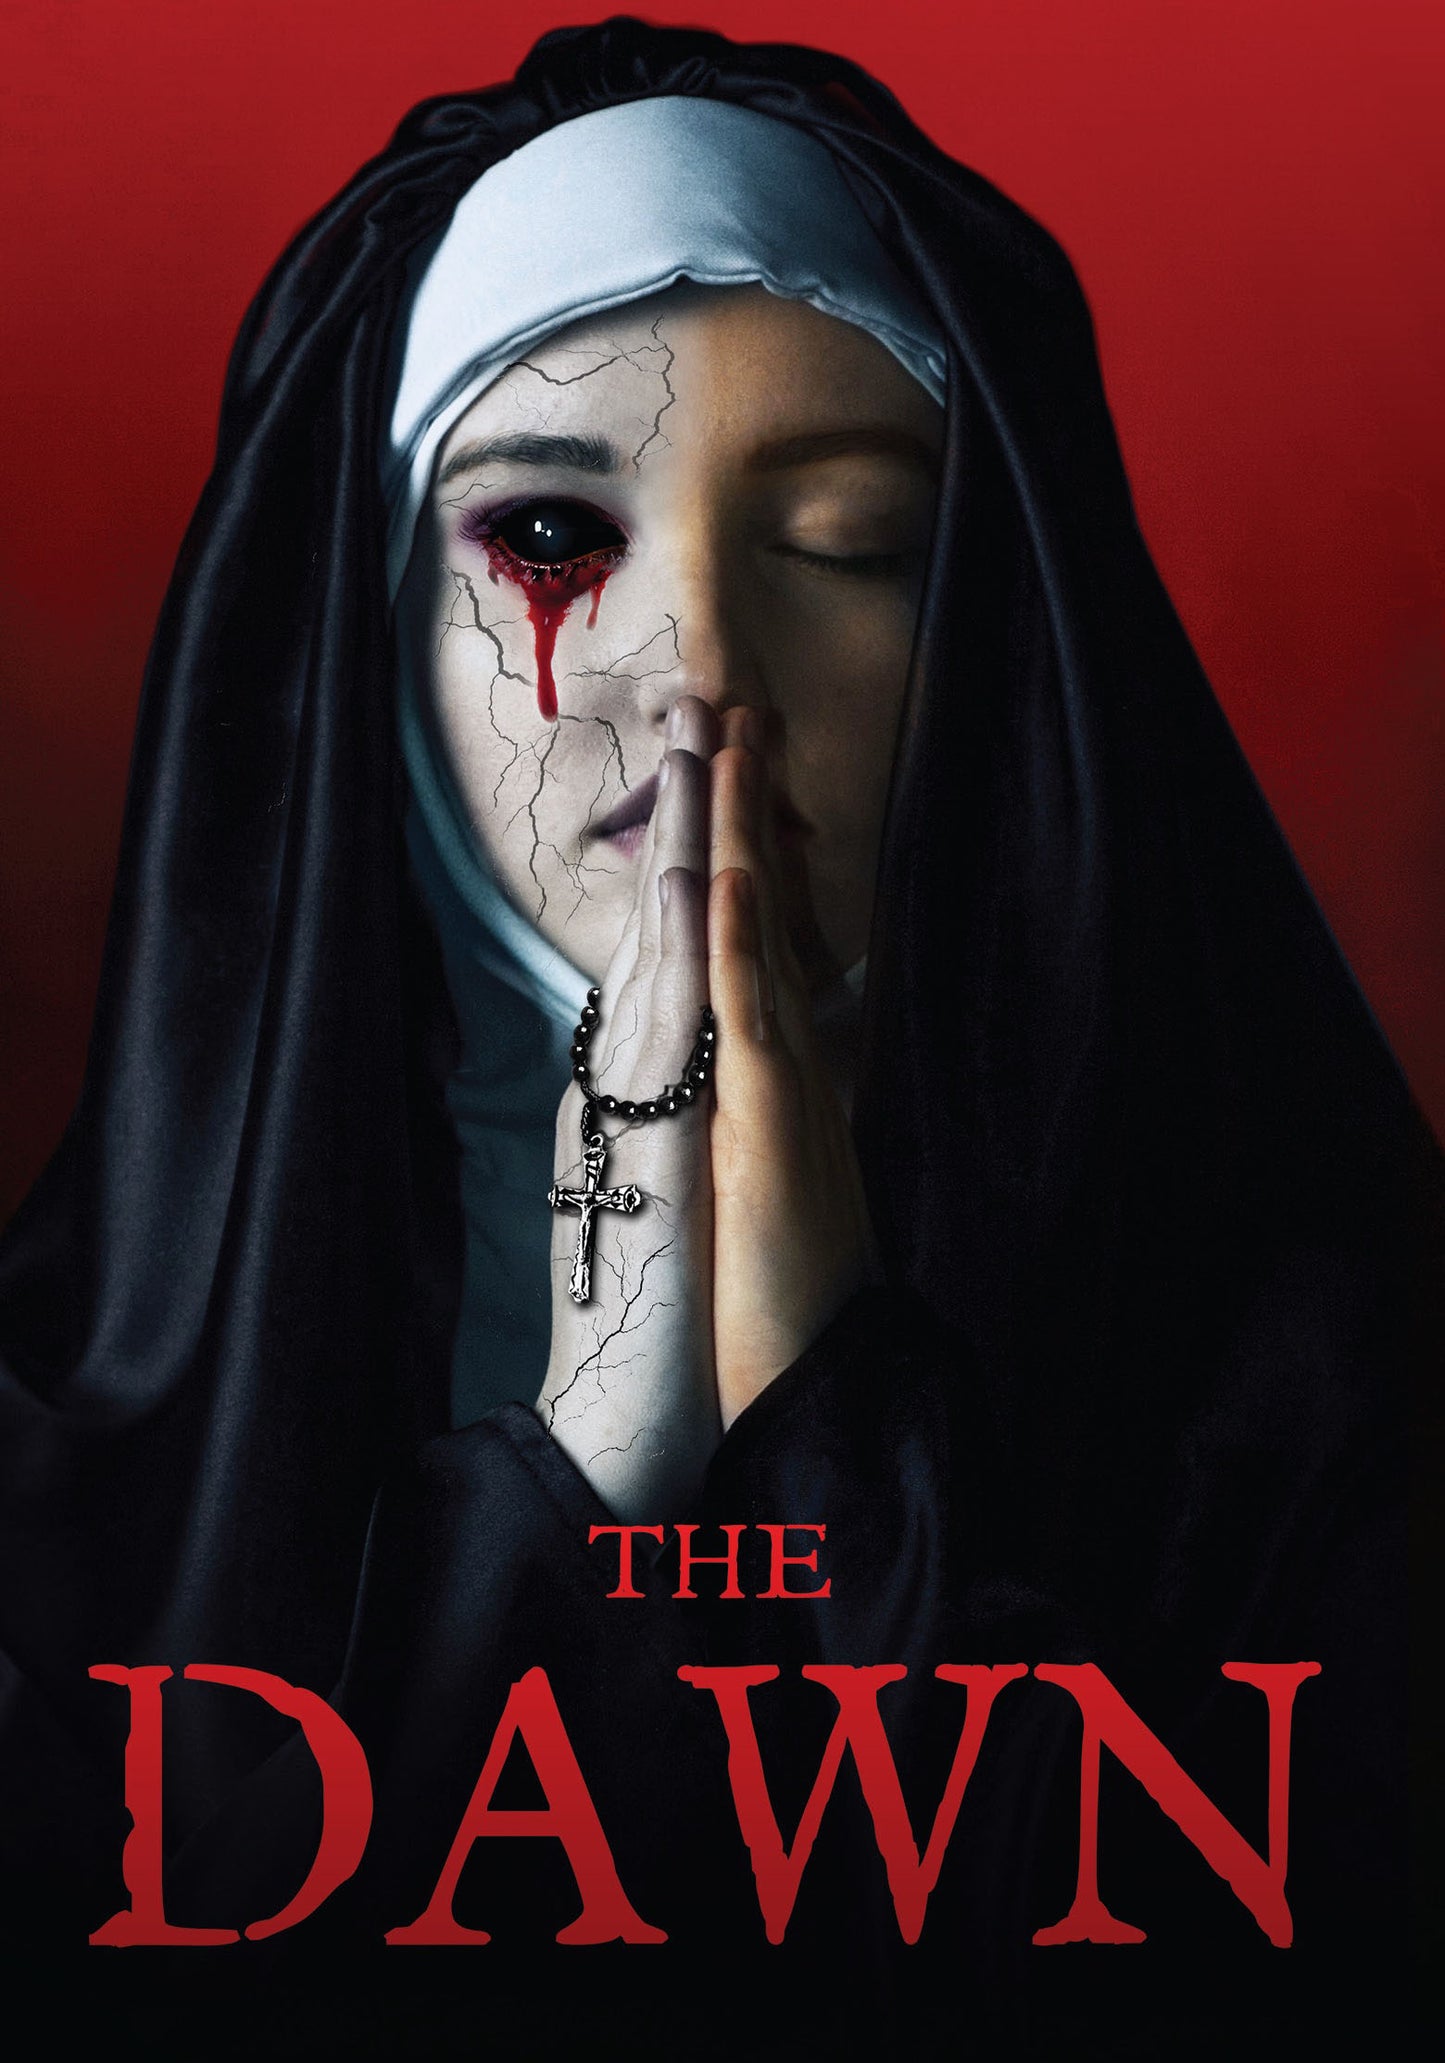 Dawn cover art